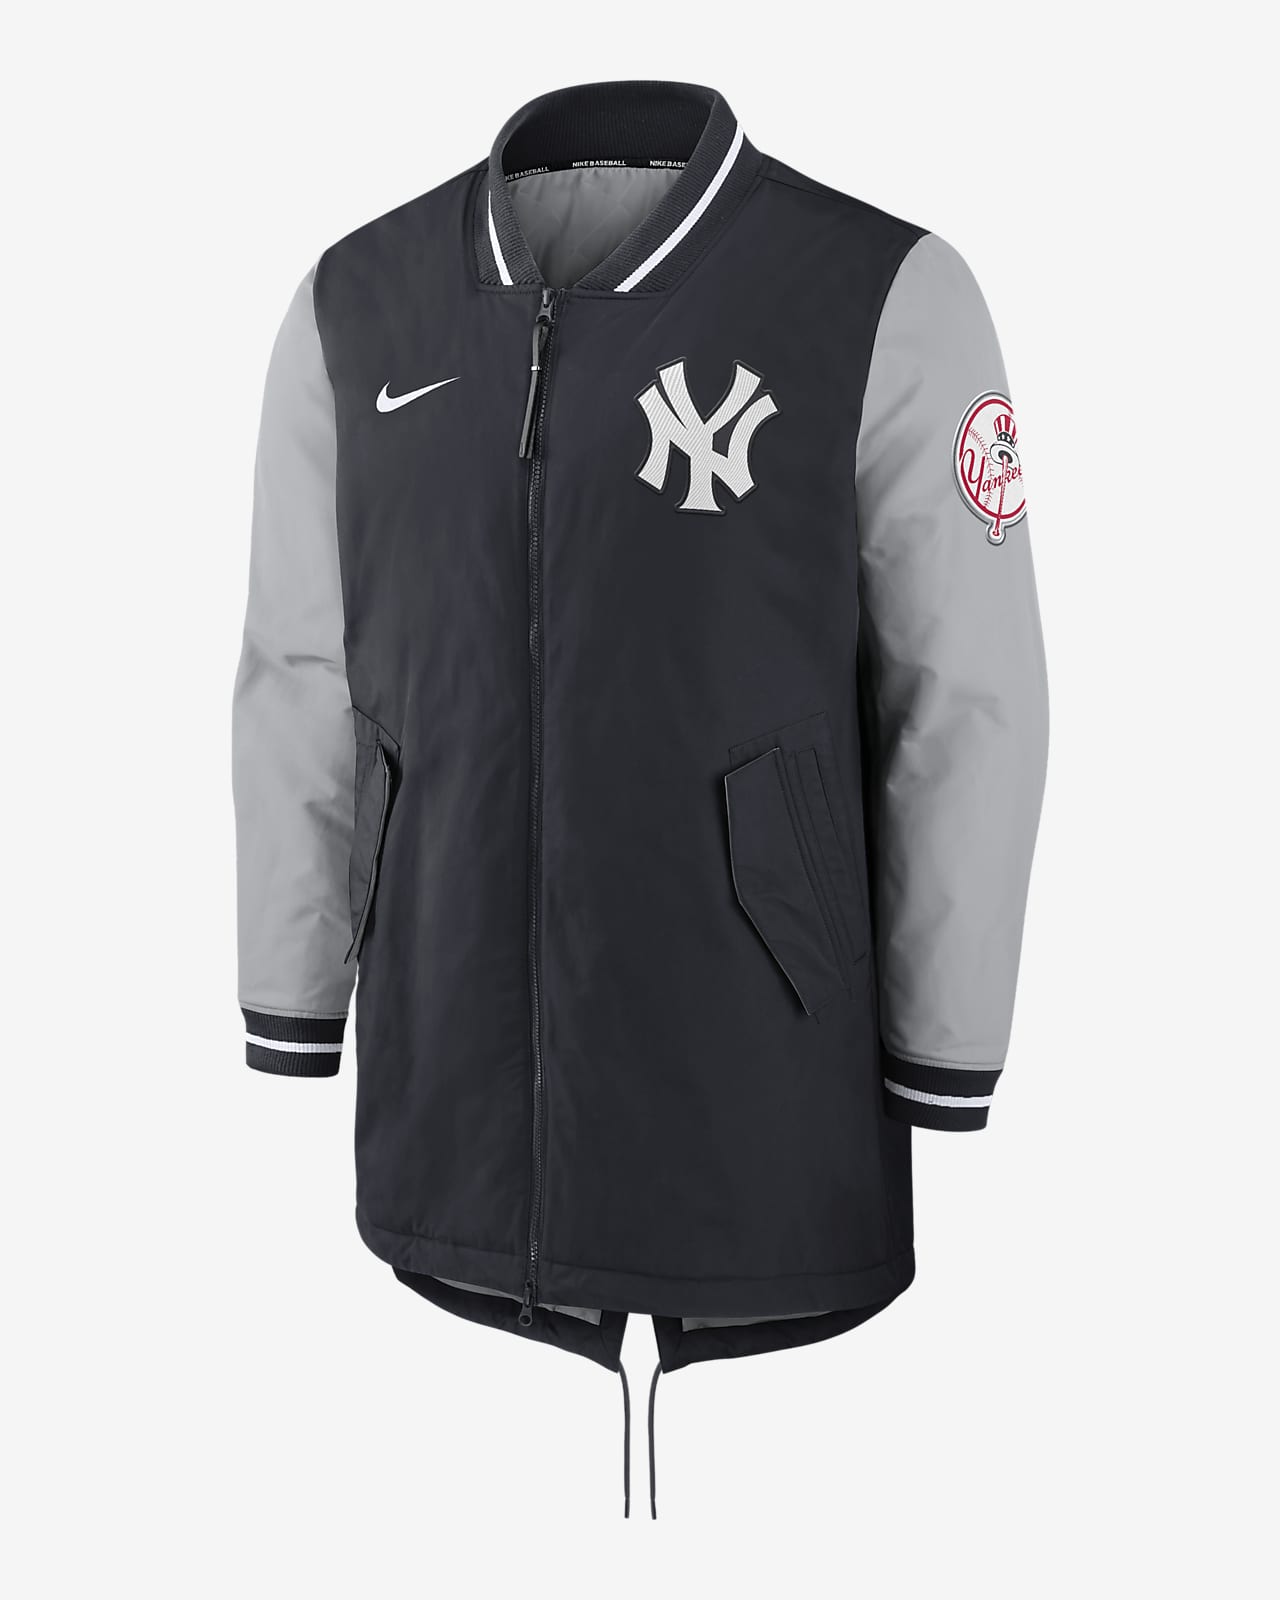 Nike Dugout (MLB New York Yankees) Men's Full-Zip Jacket